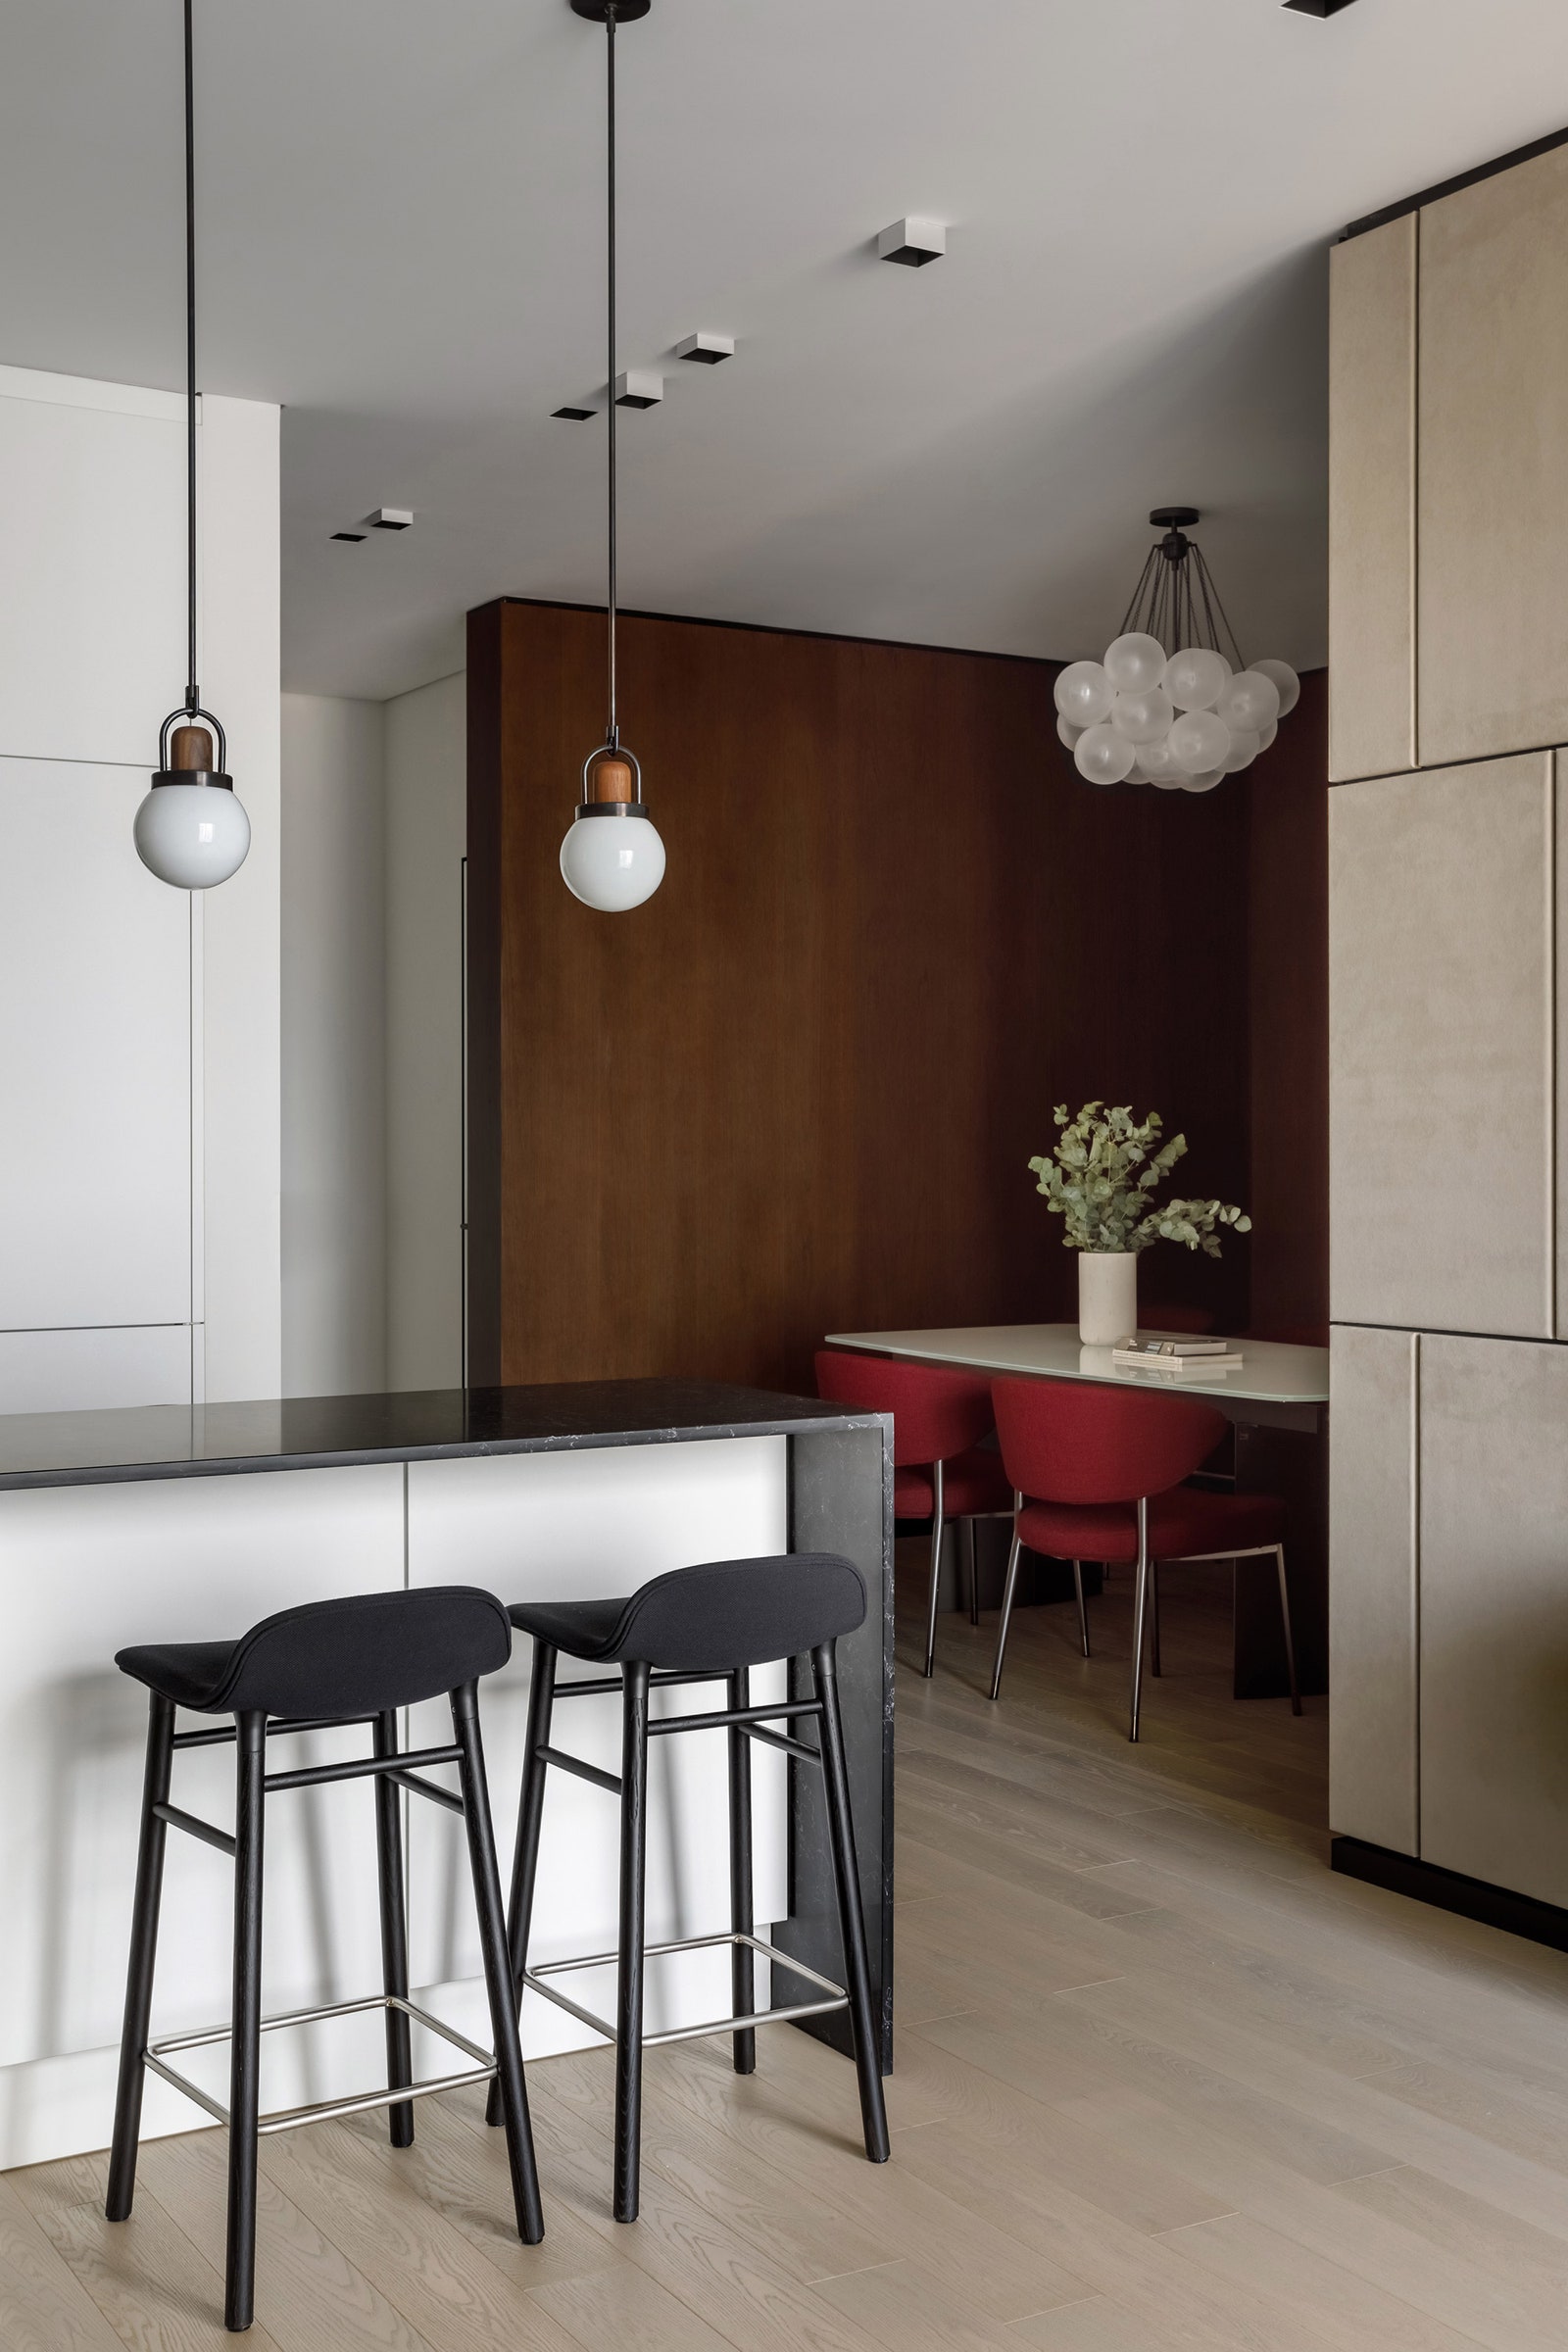 Вид из кухни на столовую со стенами облицованными орехом и креслами винного цвета.